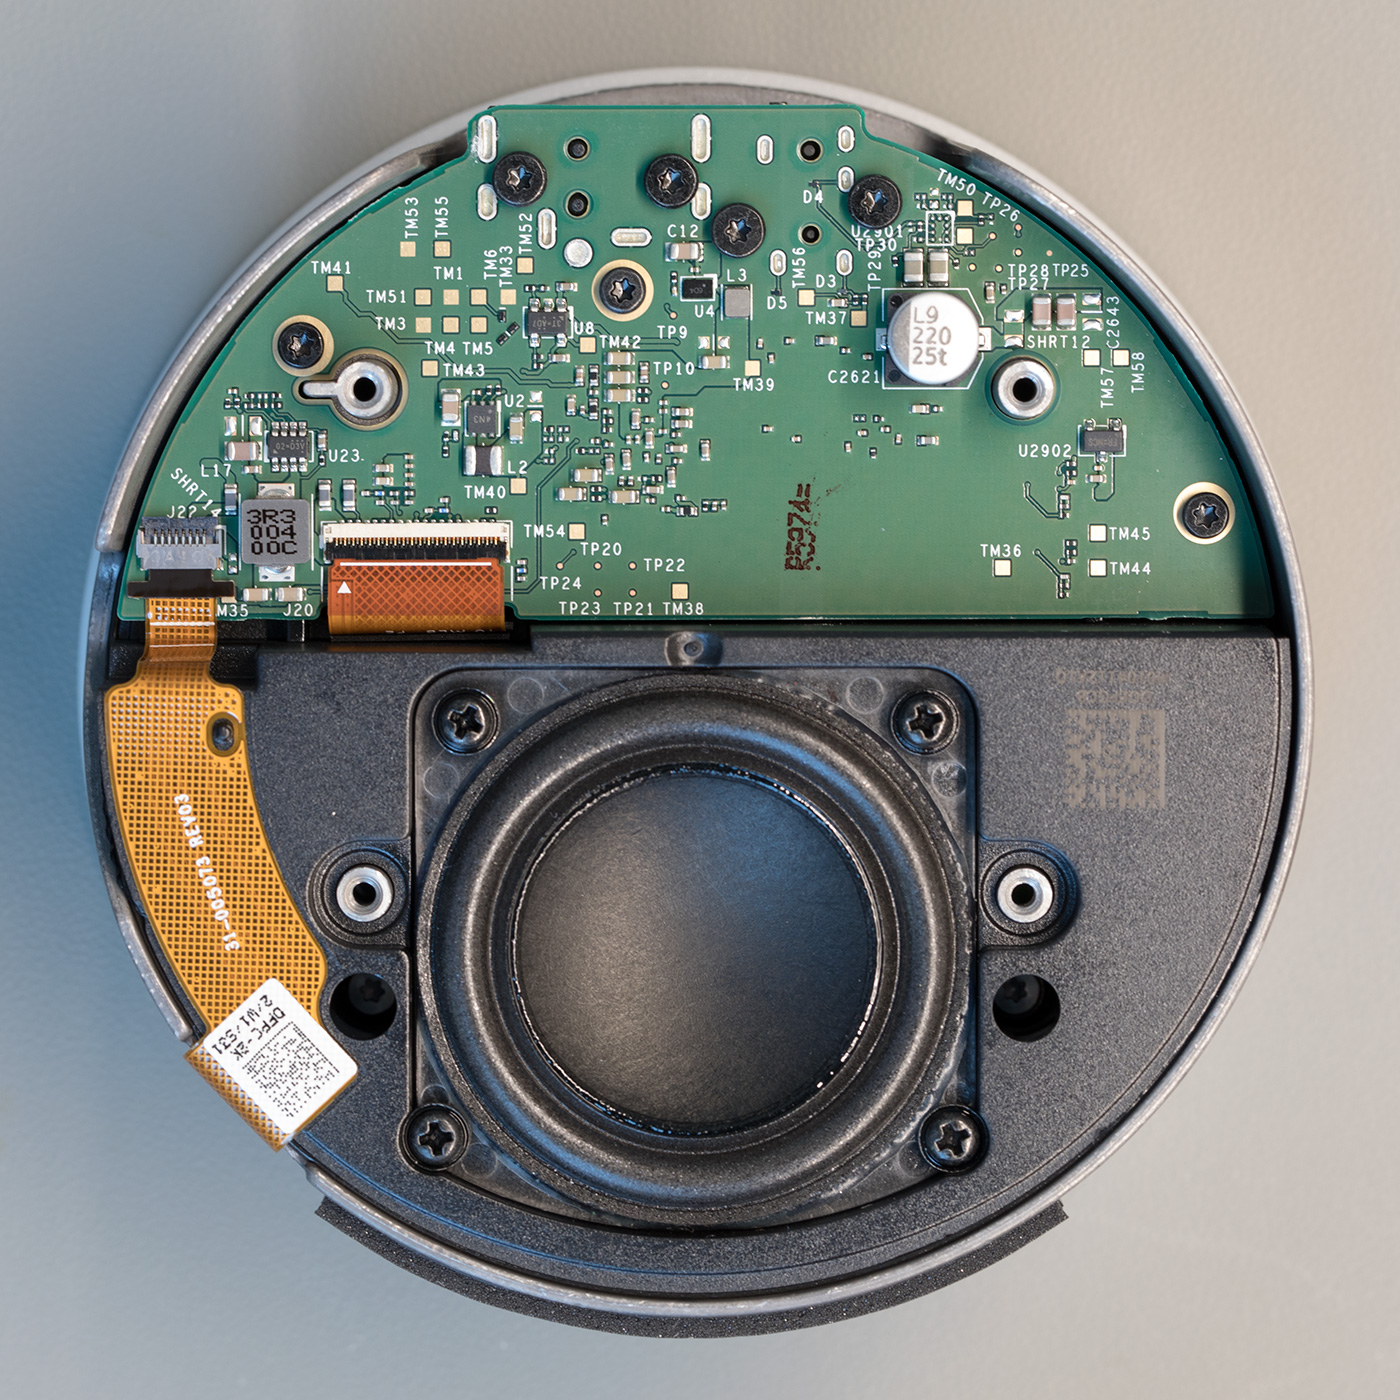 Echo Dot 3rd Gen Smart Speaker with Clock Teardown